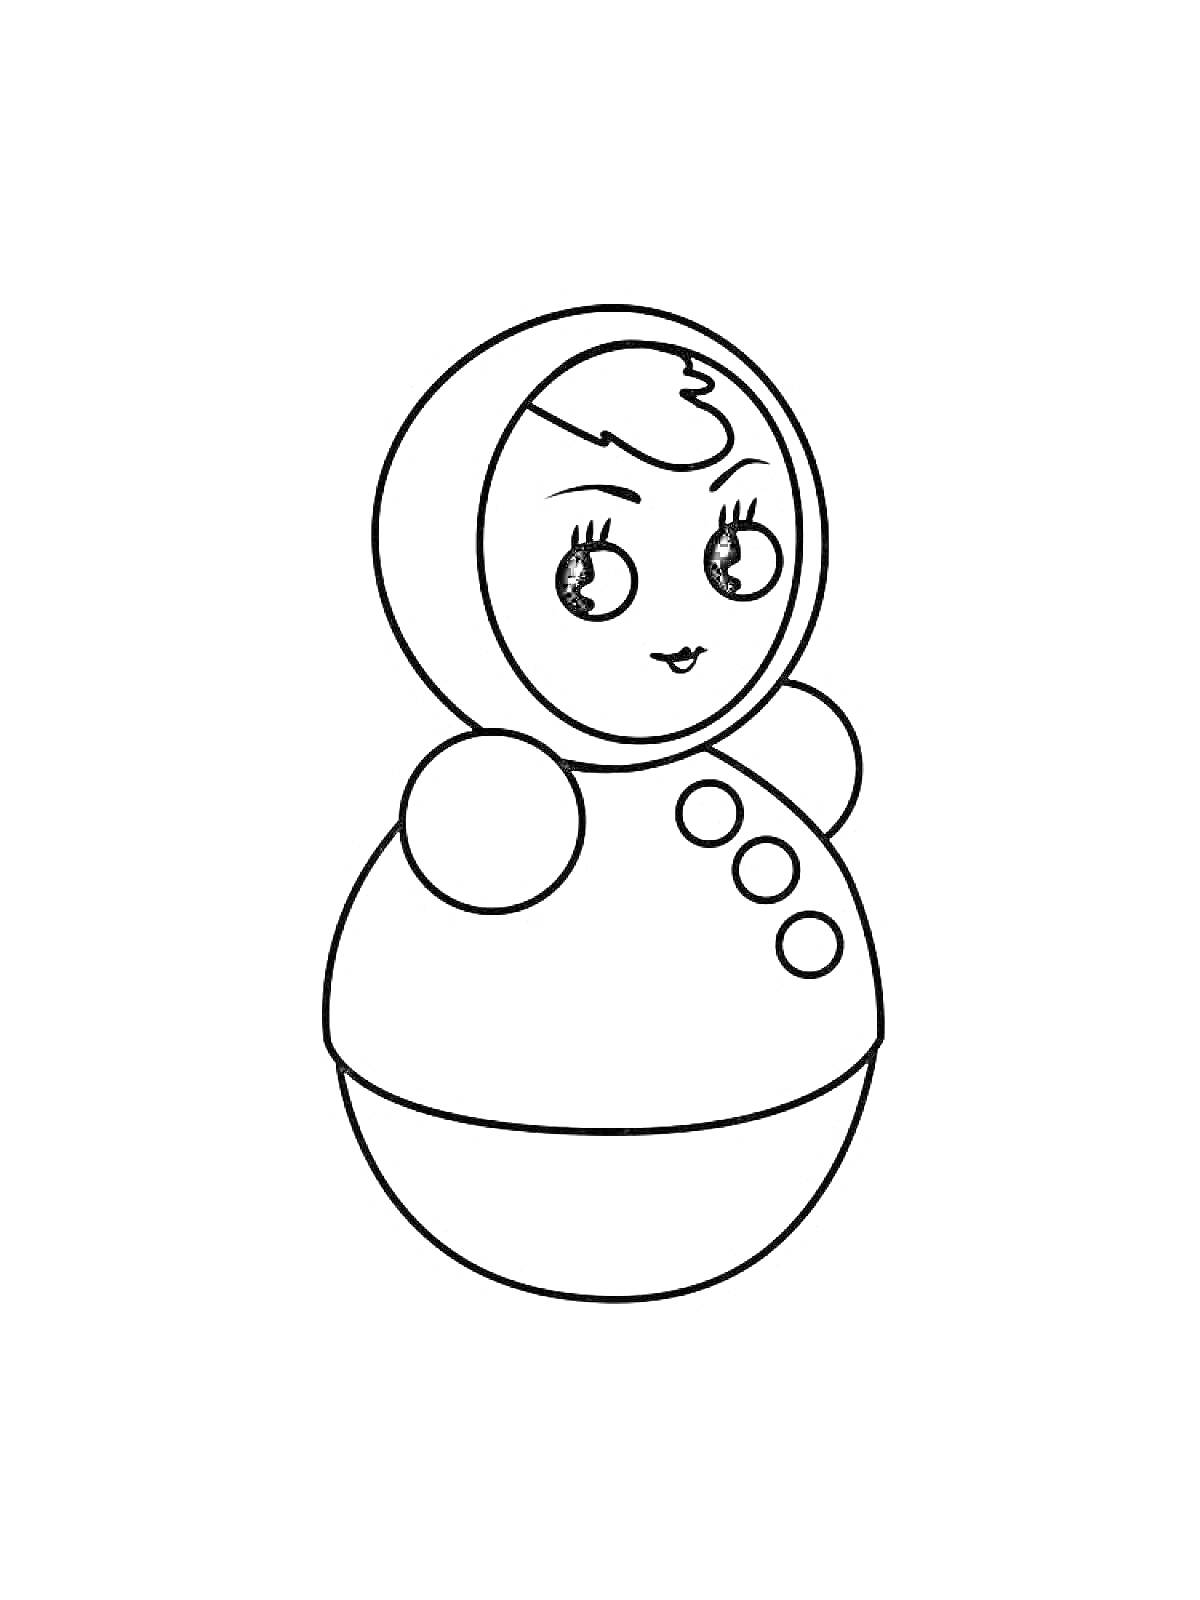 Раскраска Неваляшка с глазами, носом, ртом, шариком на голове, двумя боковыми шариками и тремя пуговицами